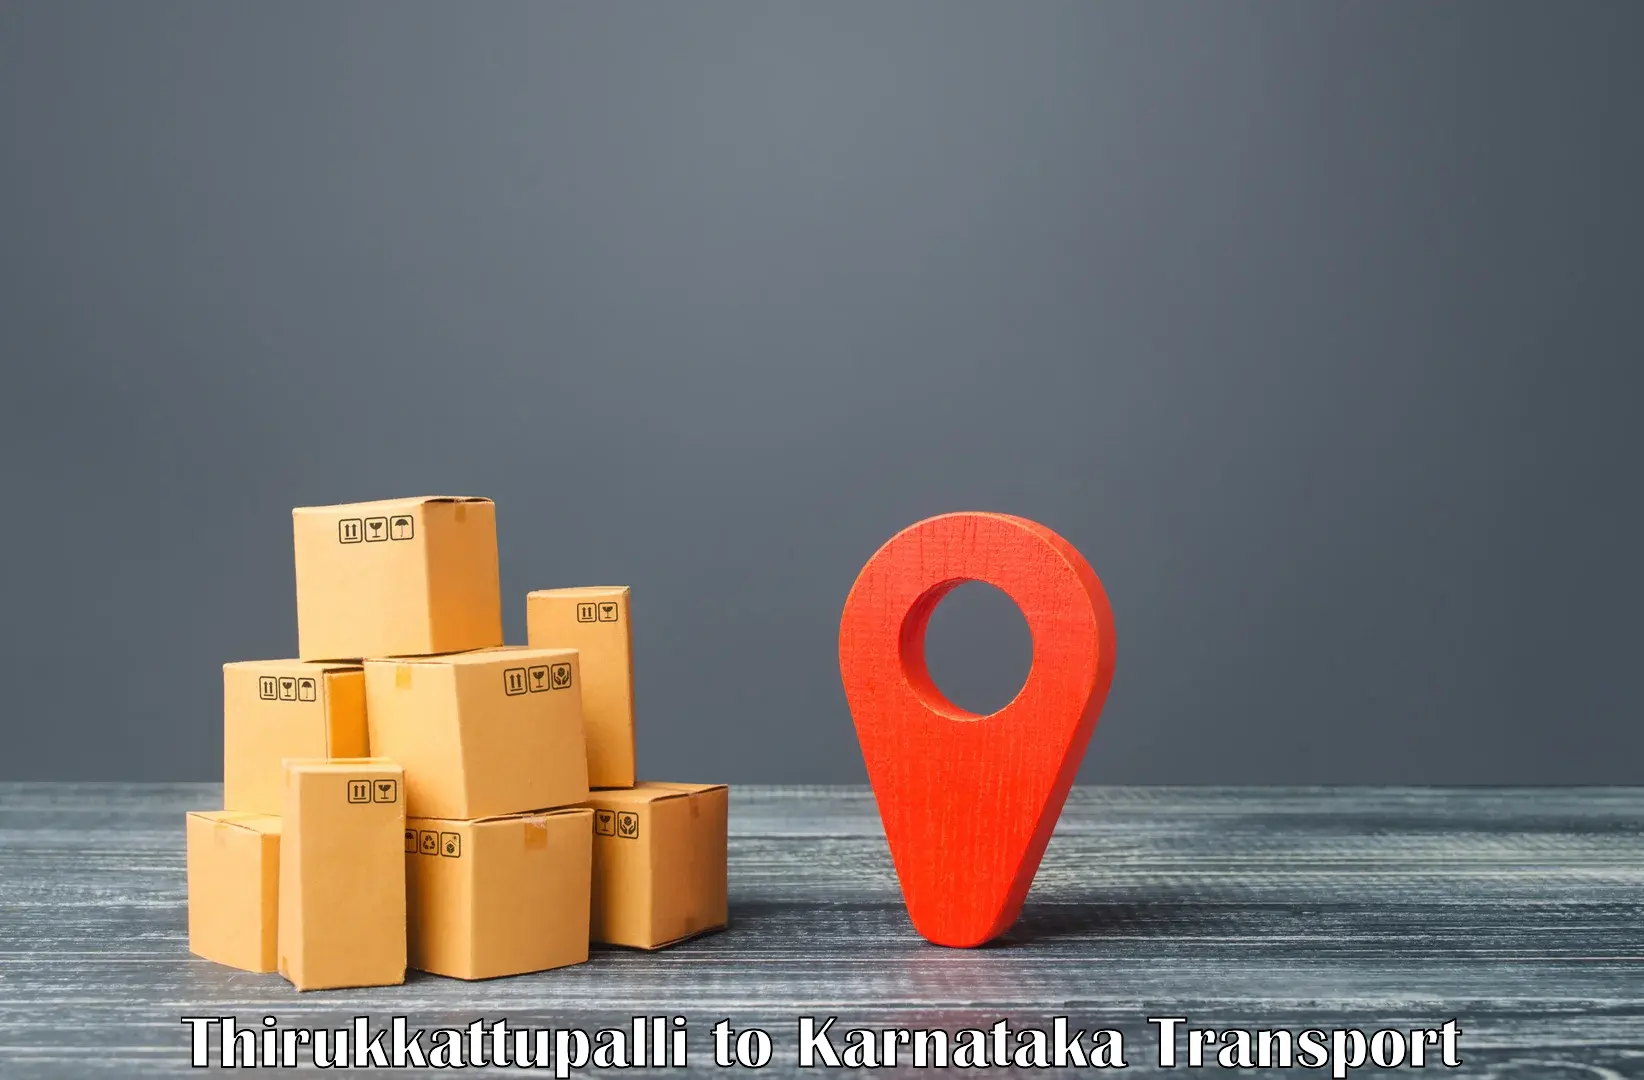 Container transport service Thirukkattupalli to Jalahalli